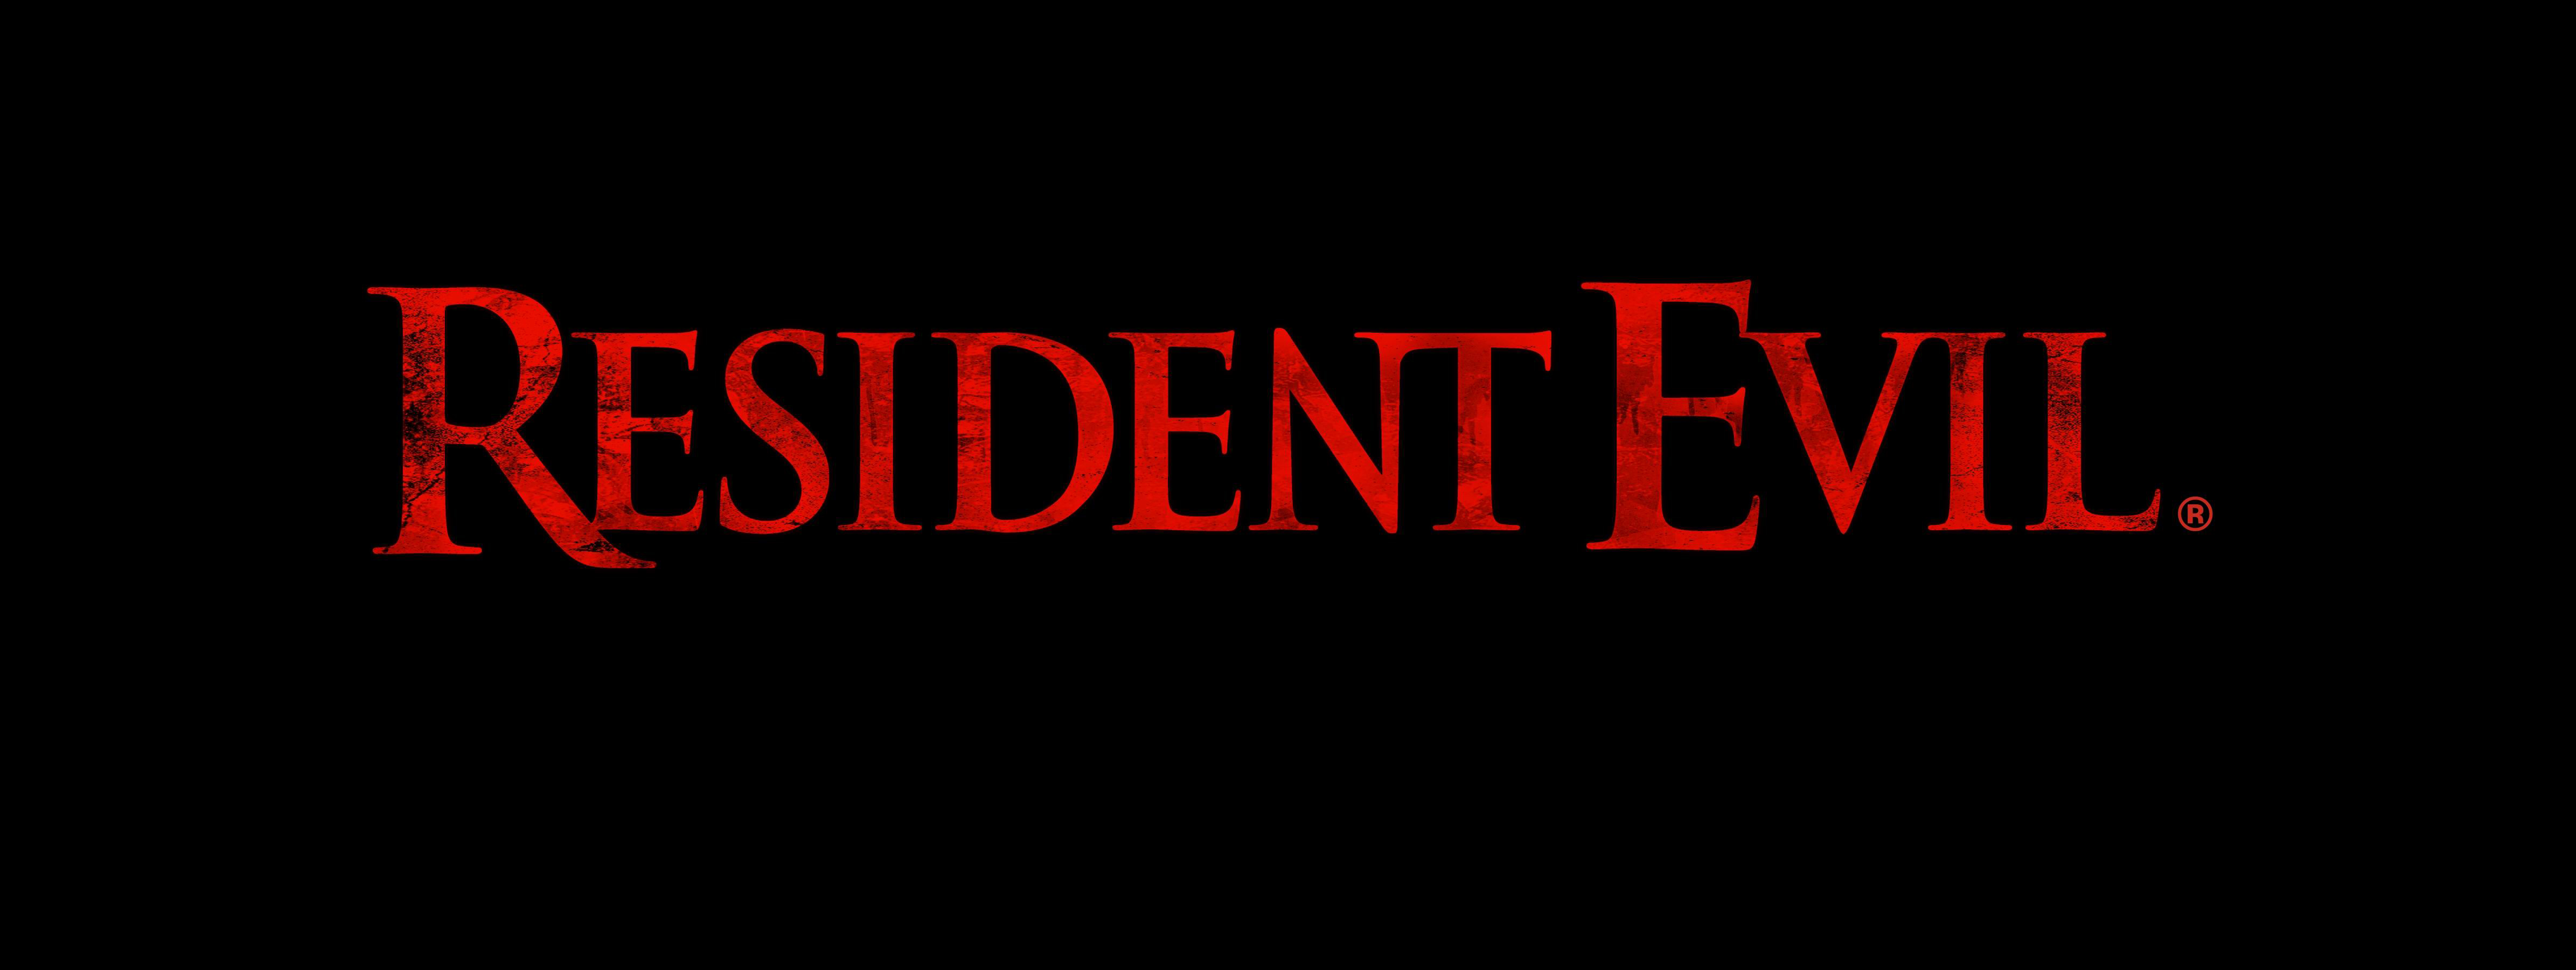 Resident Evil #8